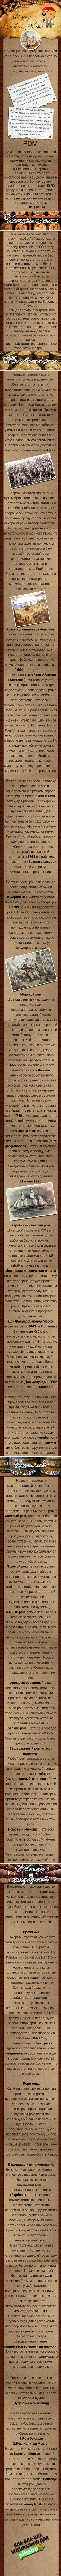    .     <a href="http://pikabu.ru/story/amerikanskiy_viski_3419690">http://pikabu.ru/story/_3419690</a>